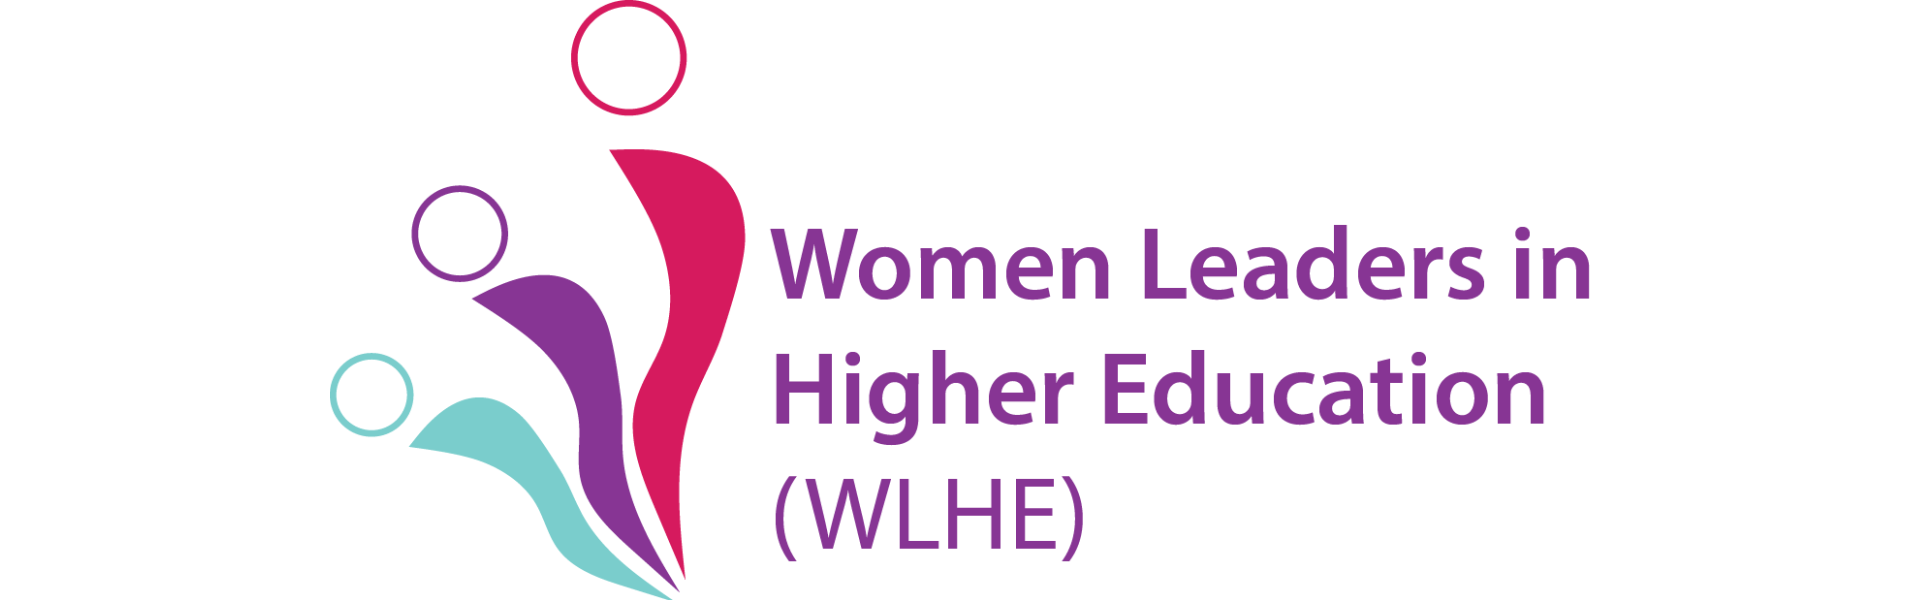 Women Leaders in Higher Education logo